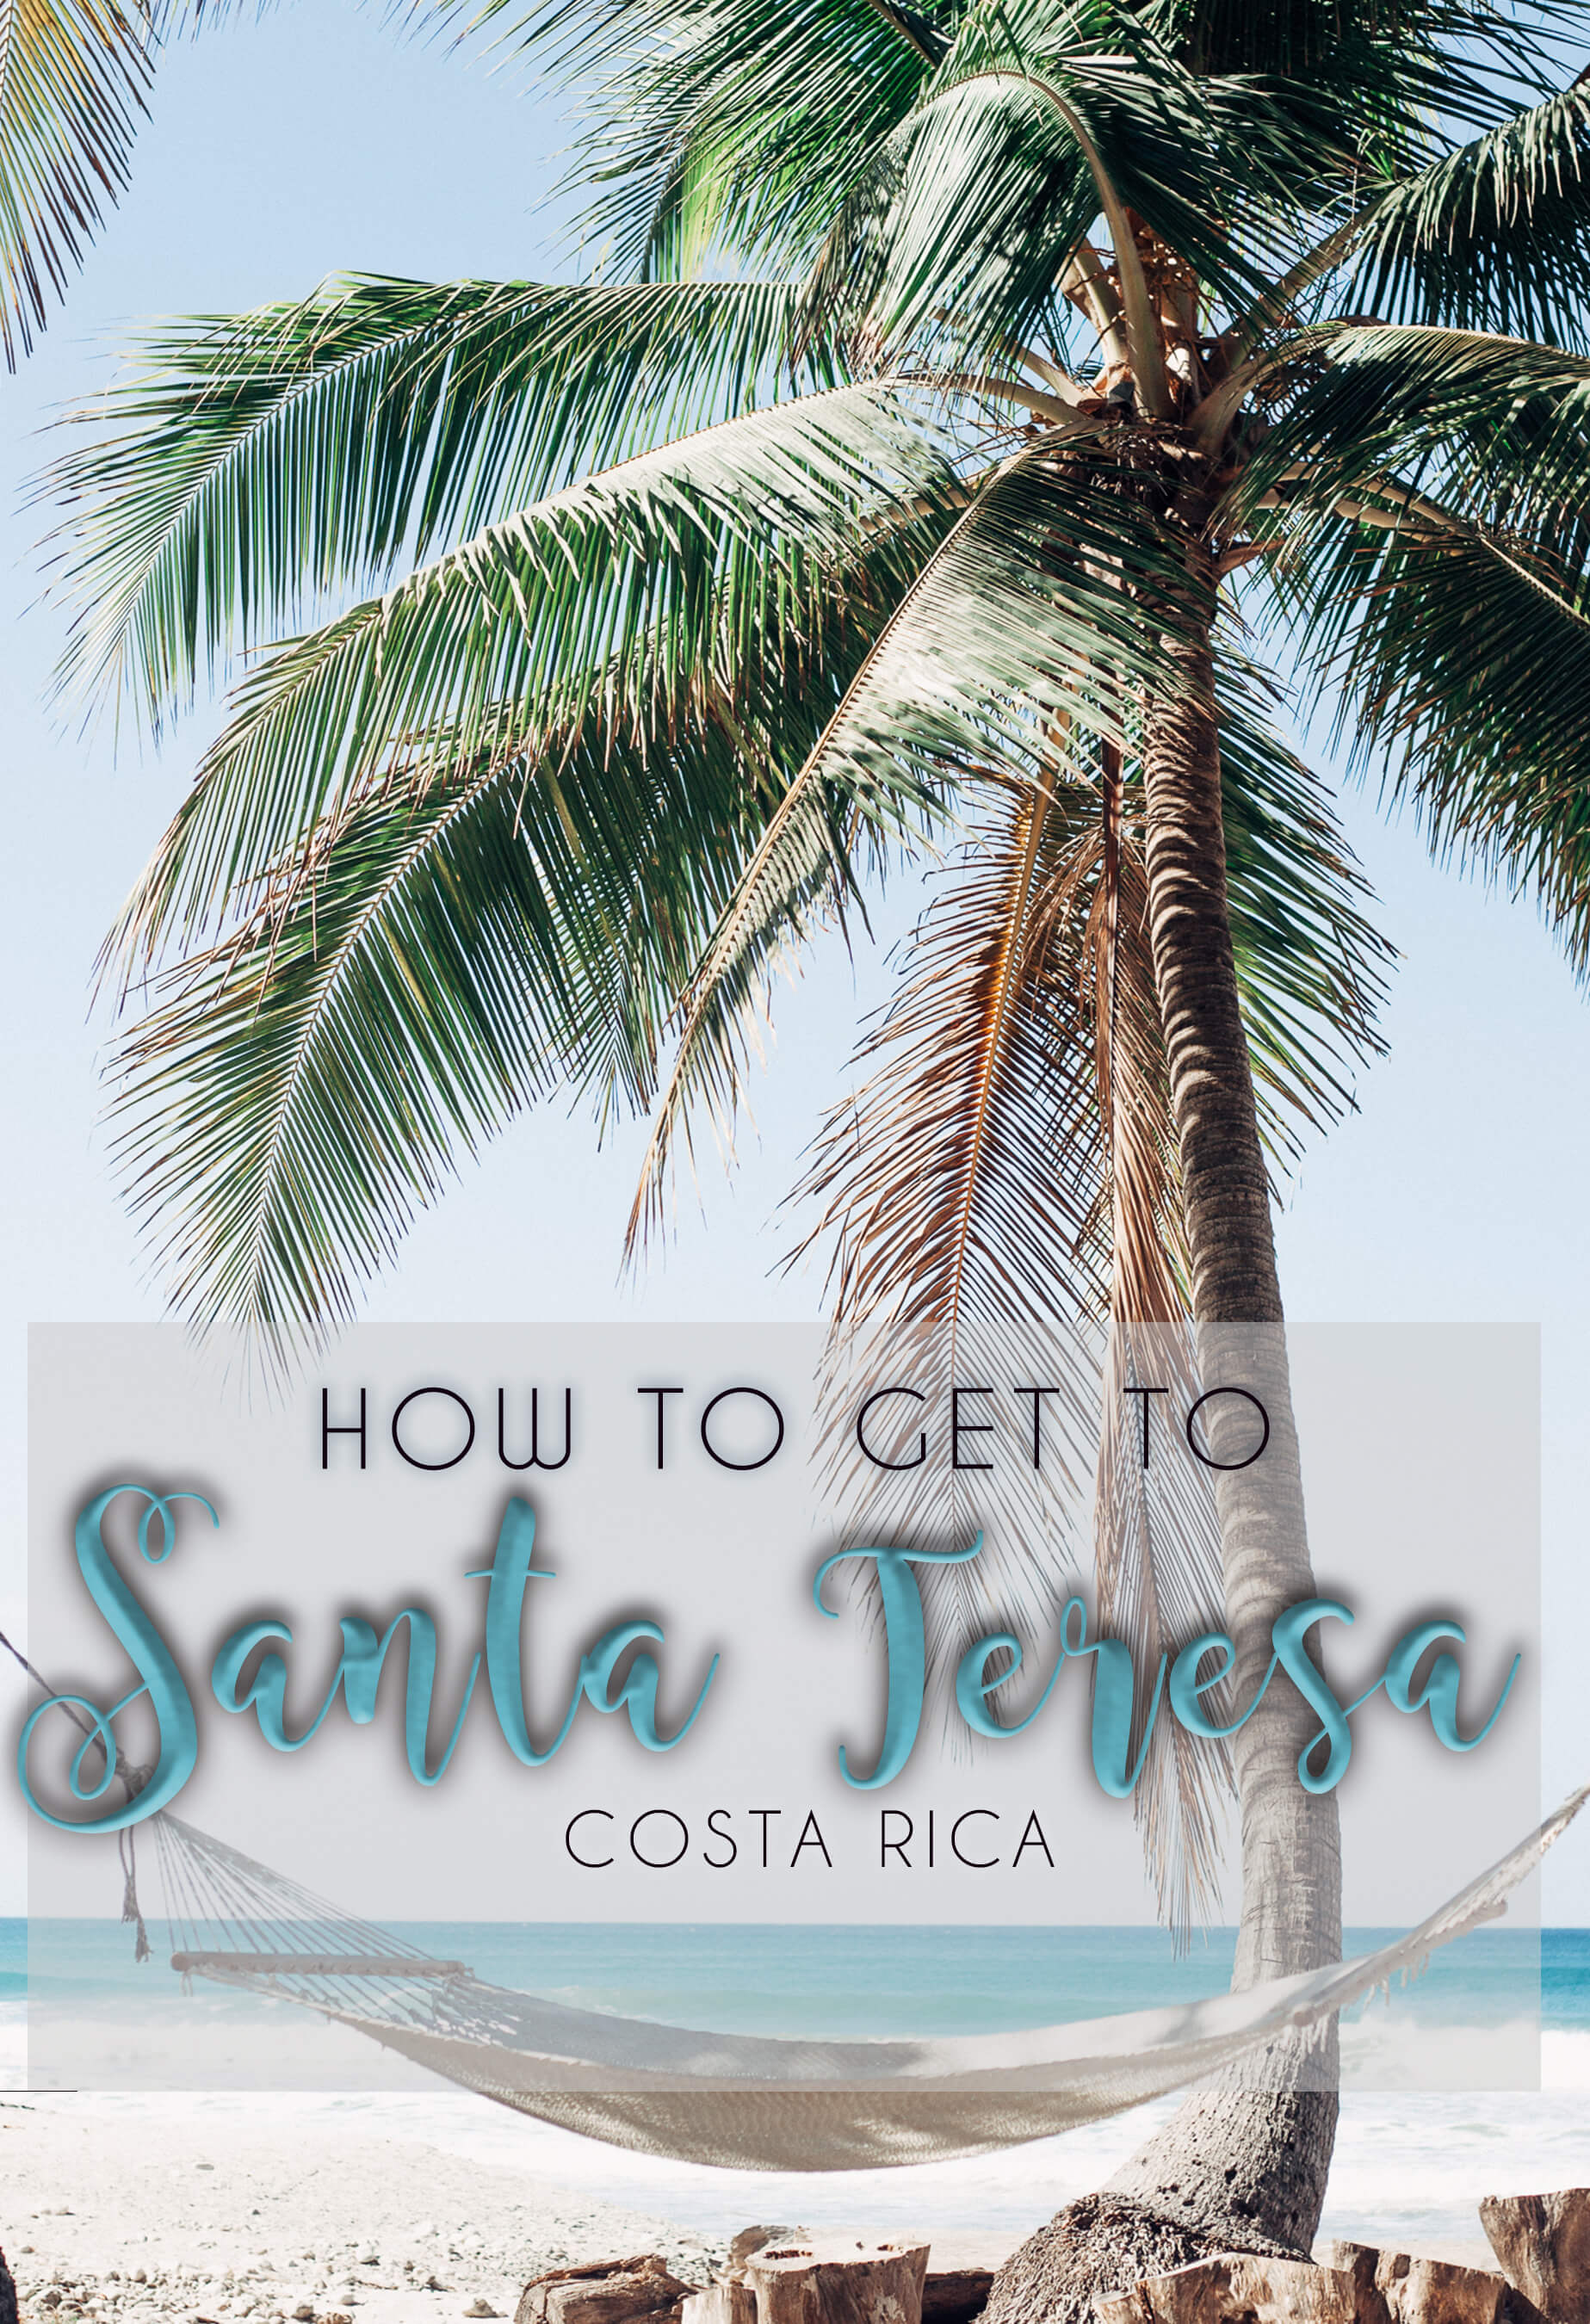 Getting to Santa Teresa